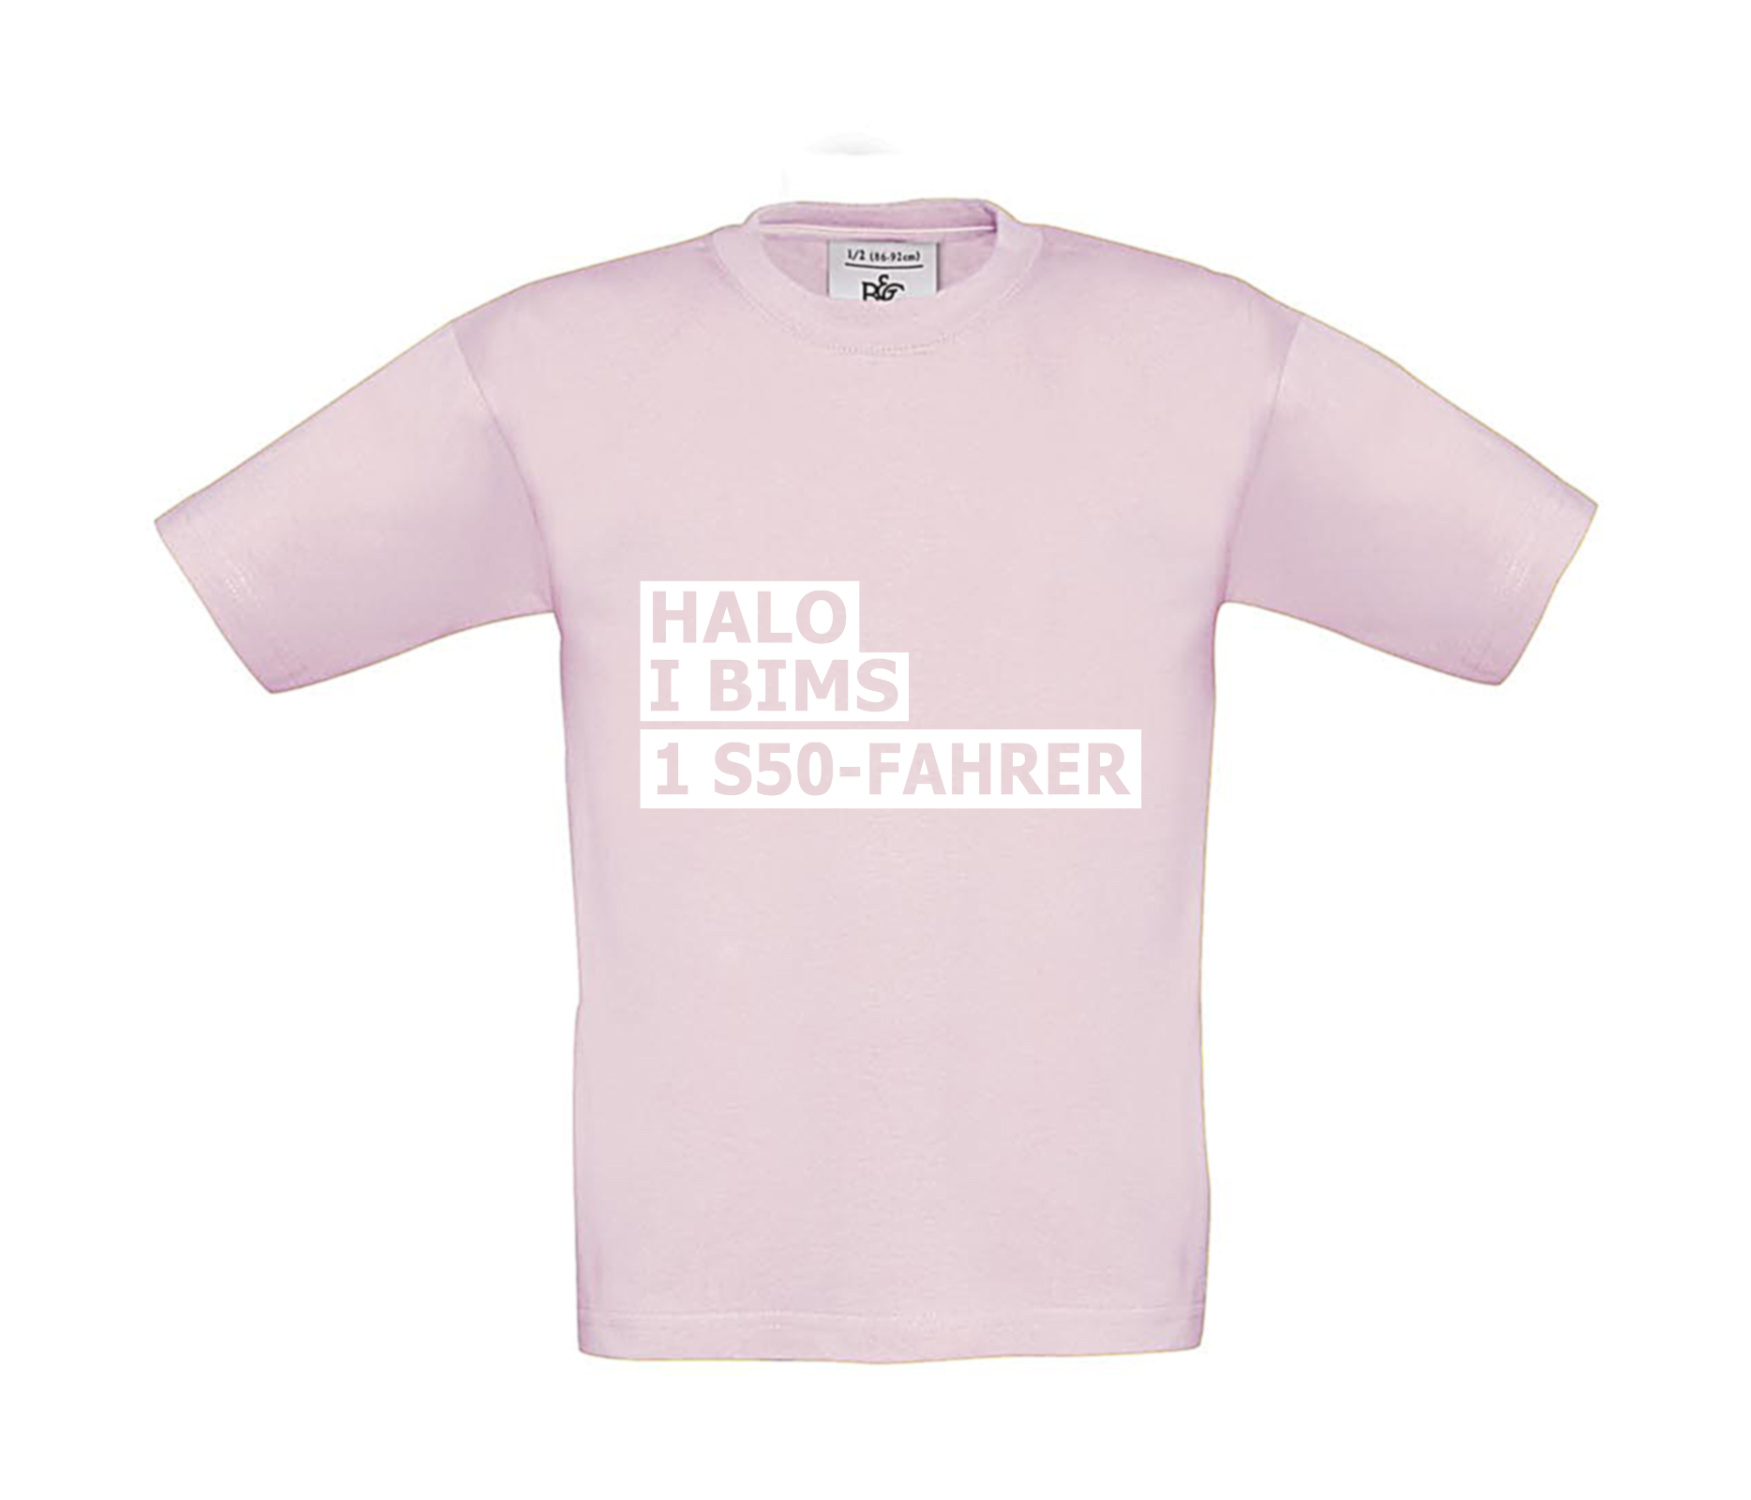 T-Shirt Kinder 2Takter - Halo I bims 1 S50-Fahrer